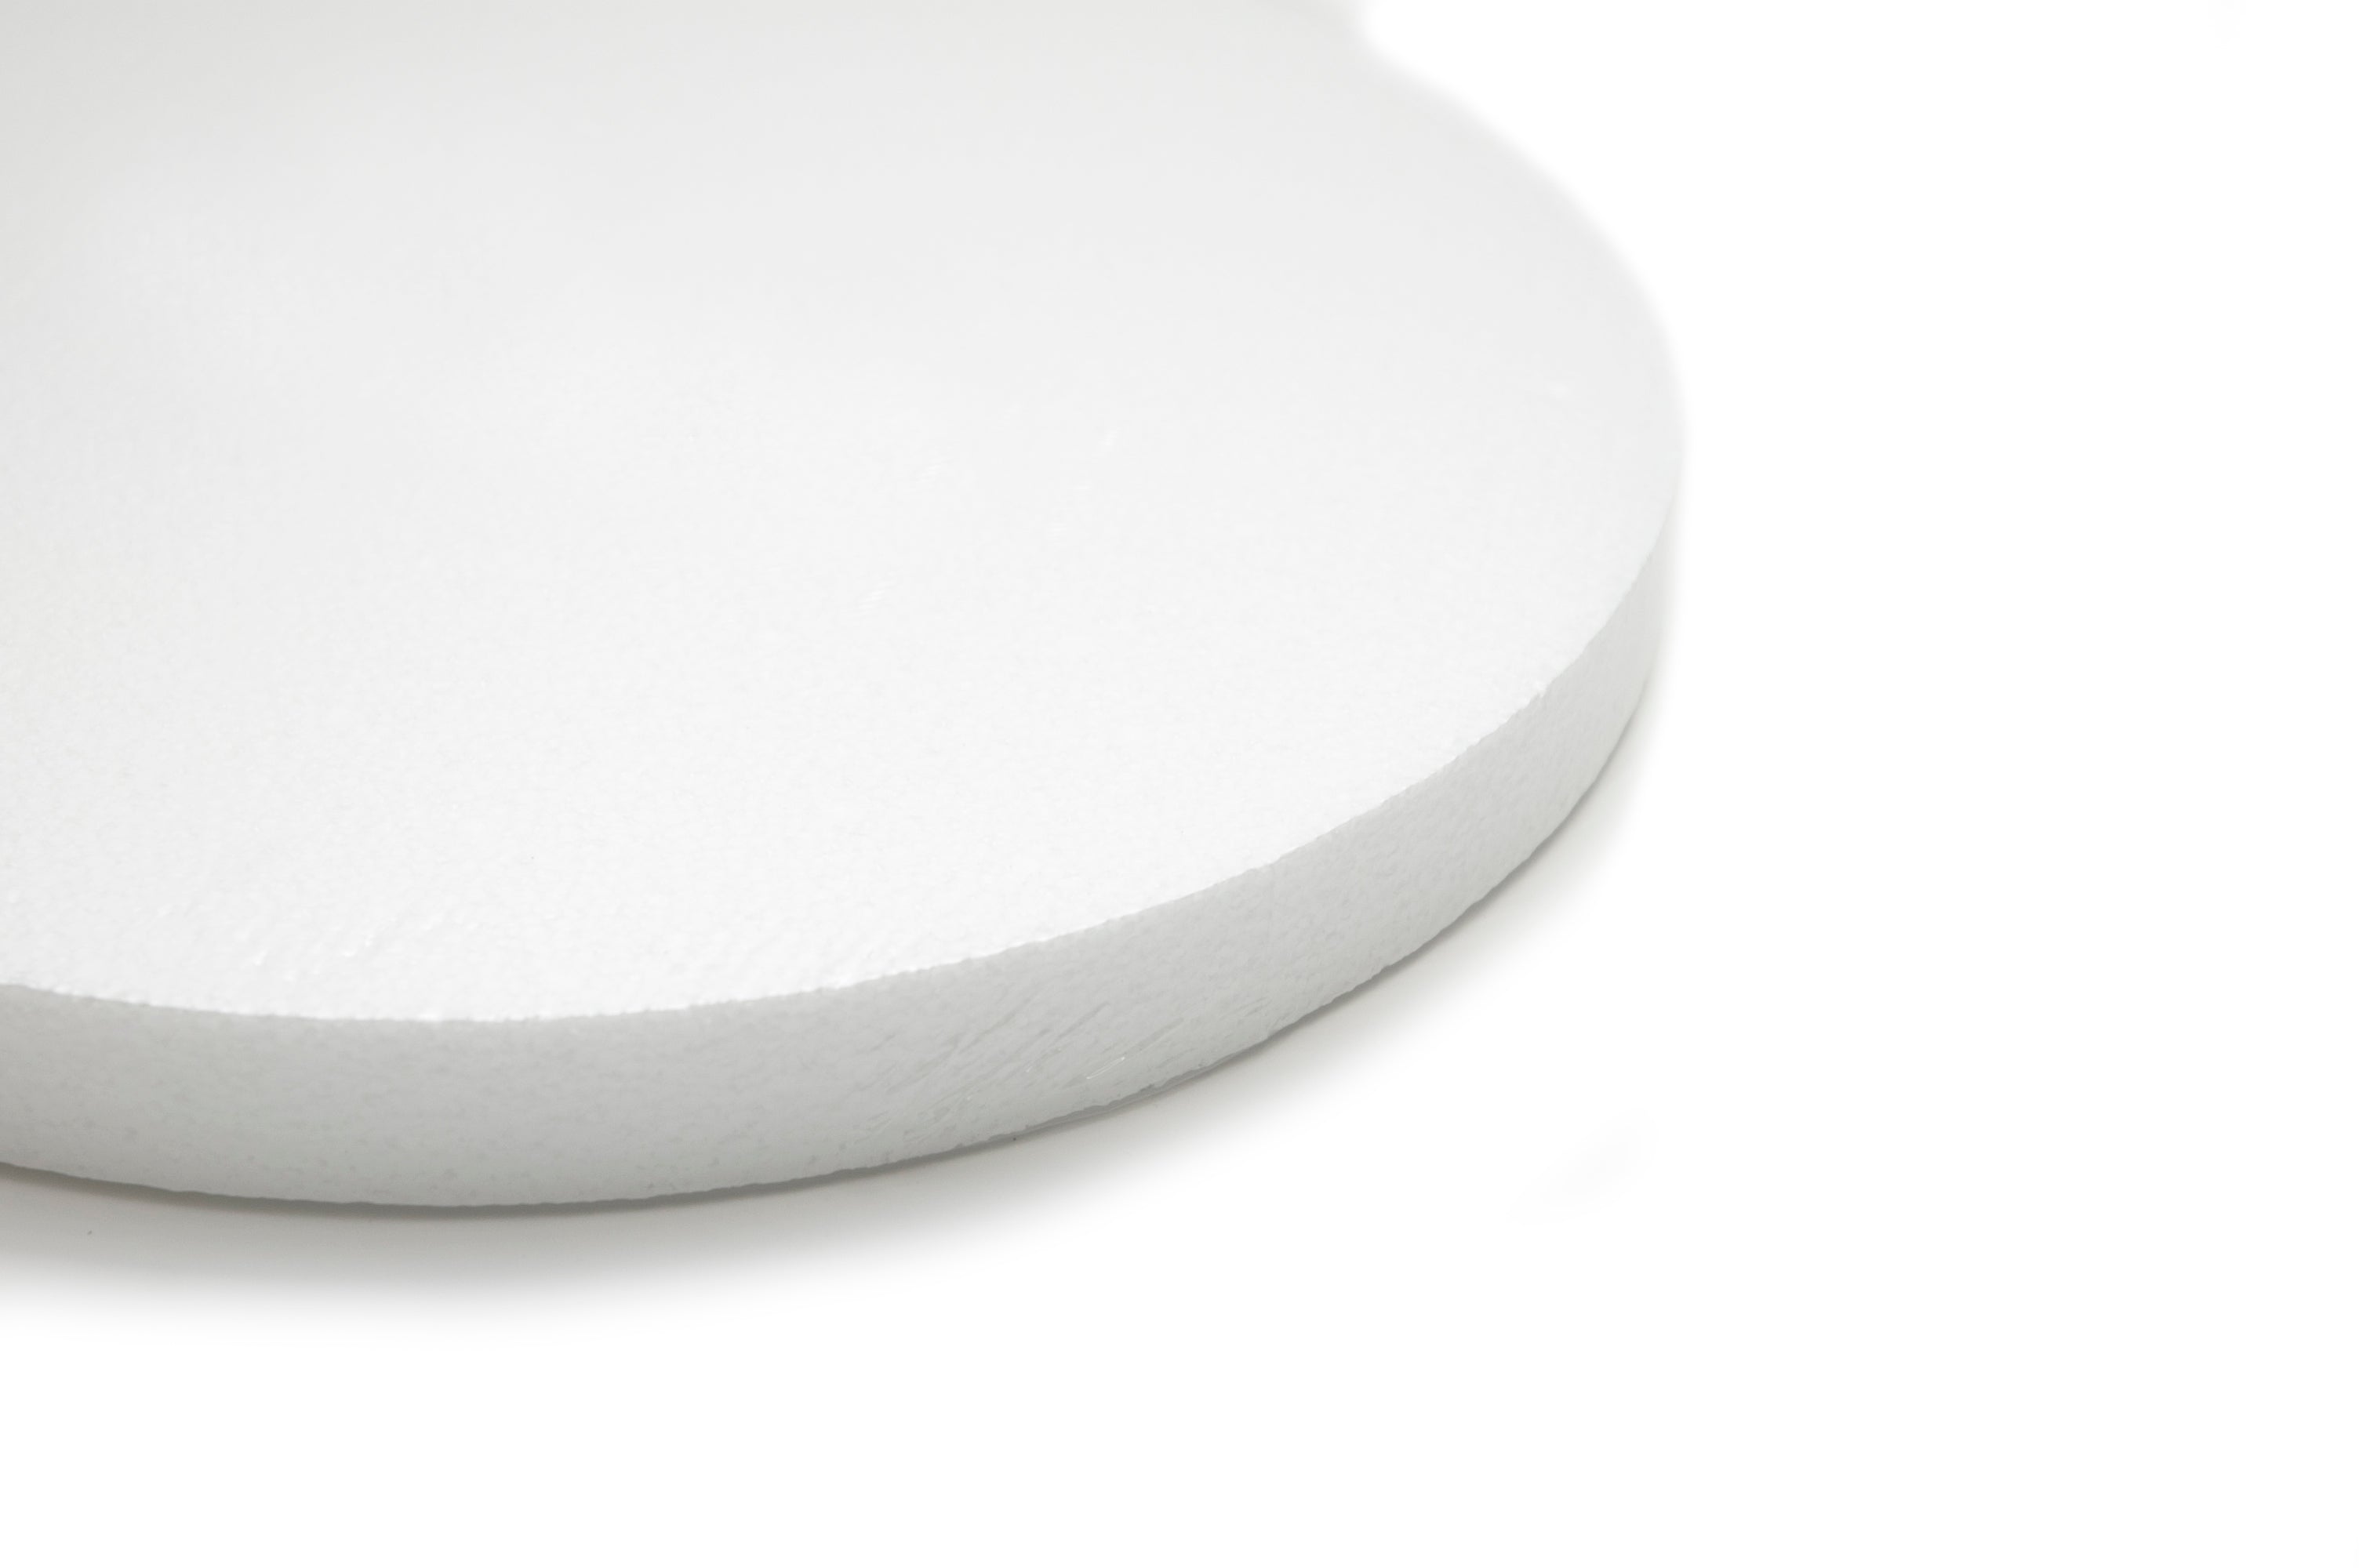 White Styrofoam/Polystyrene/EPS Foam Block - 12 x 14 x 22